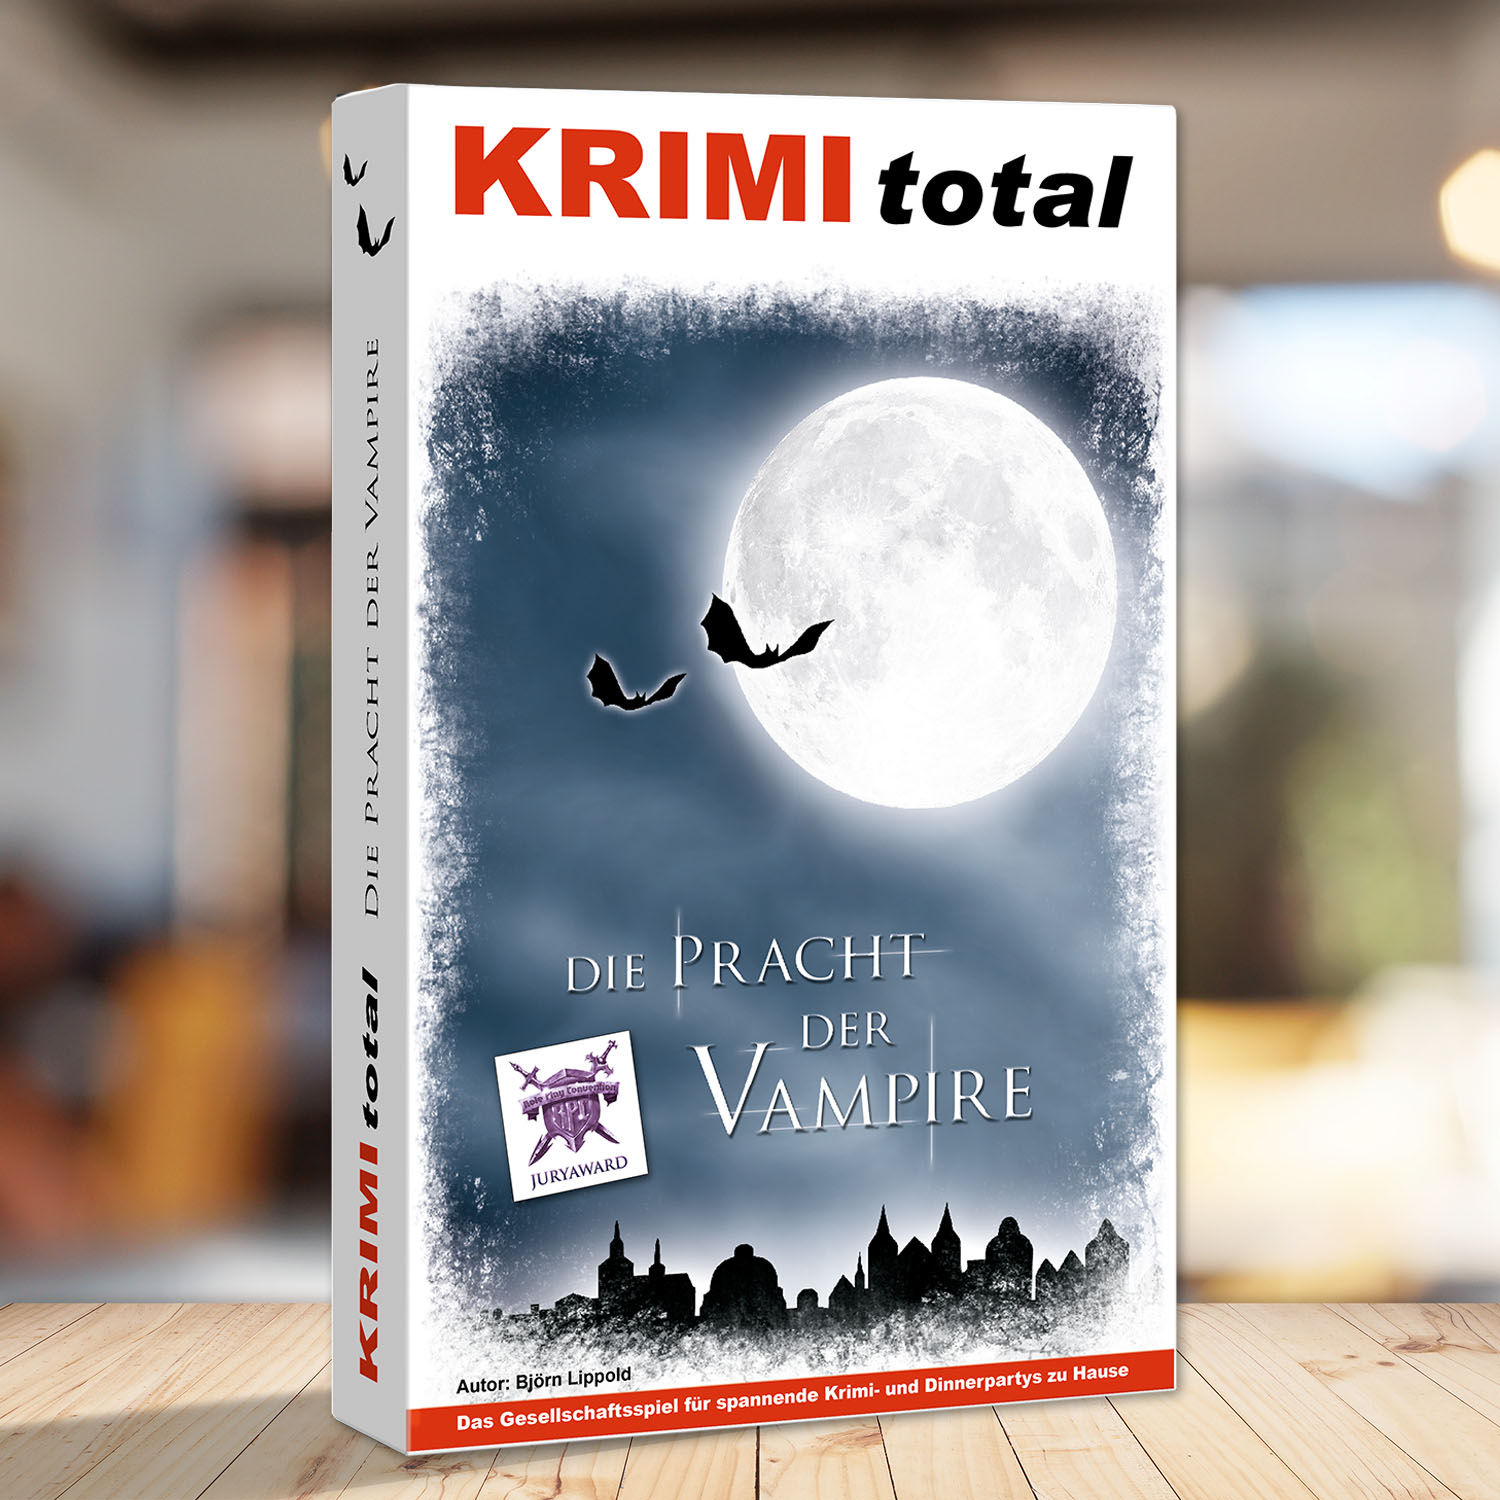 Abbildung eines Spielkartons des Krimidinner Spiels "KRIMI total - Die Pracht der Vampire"